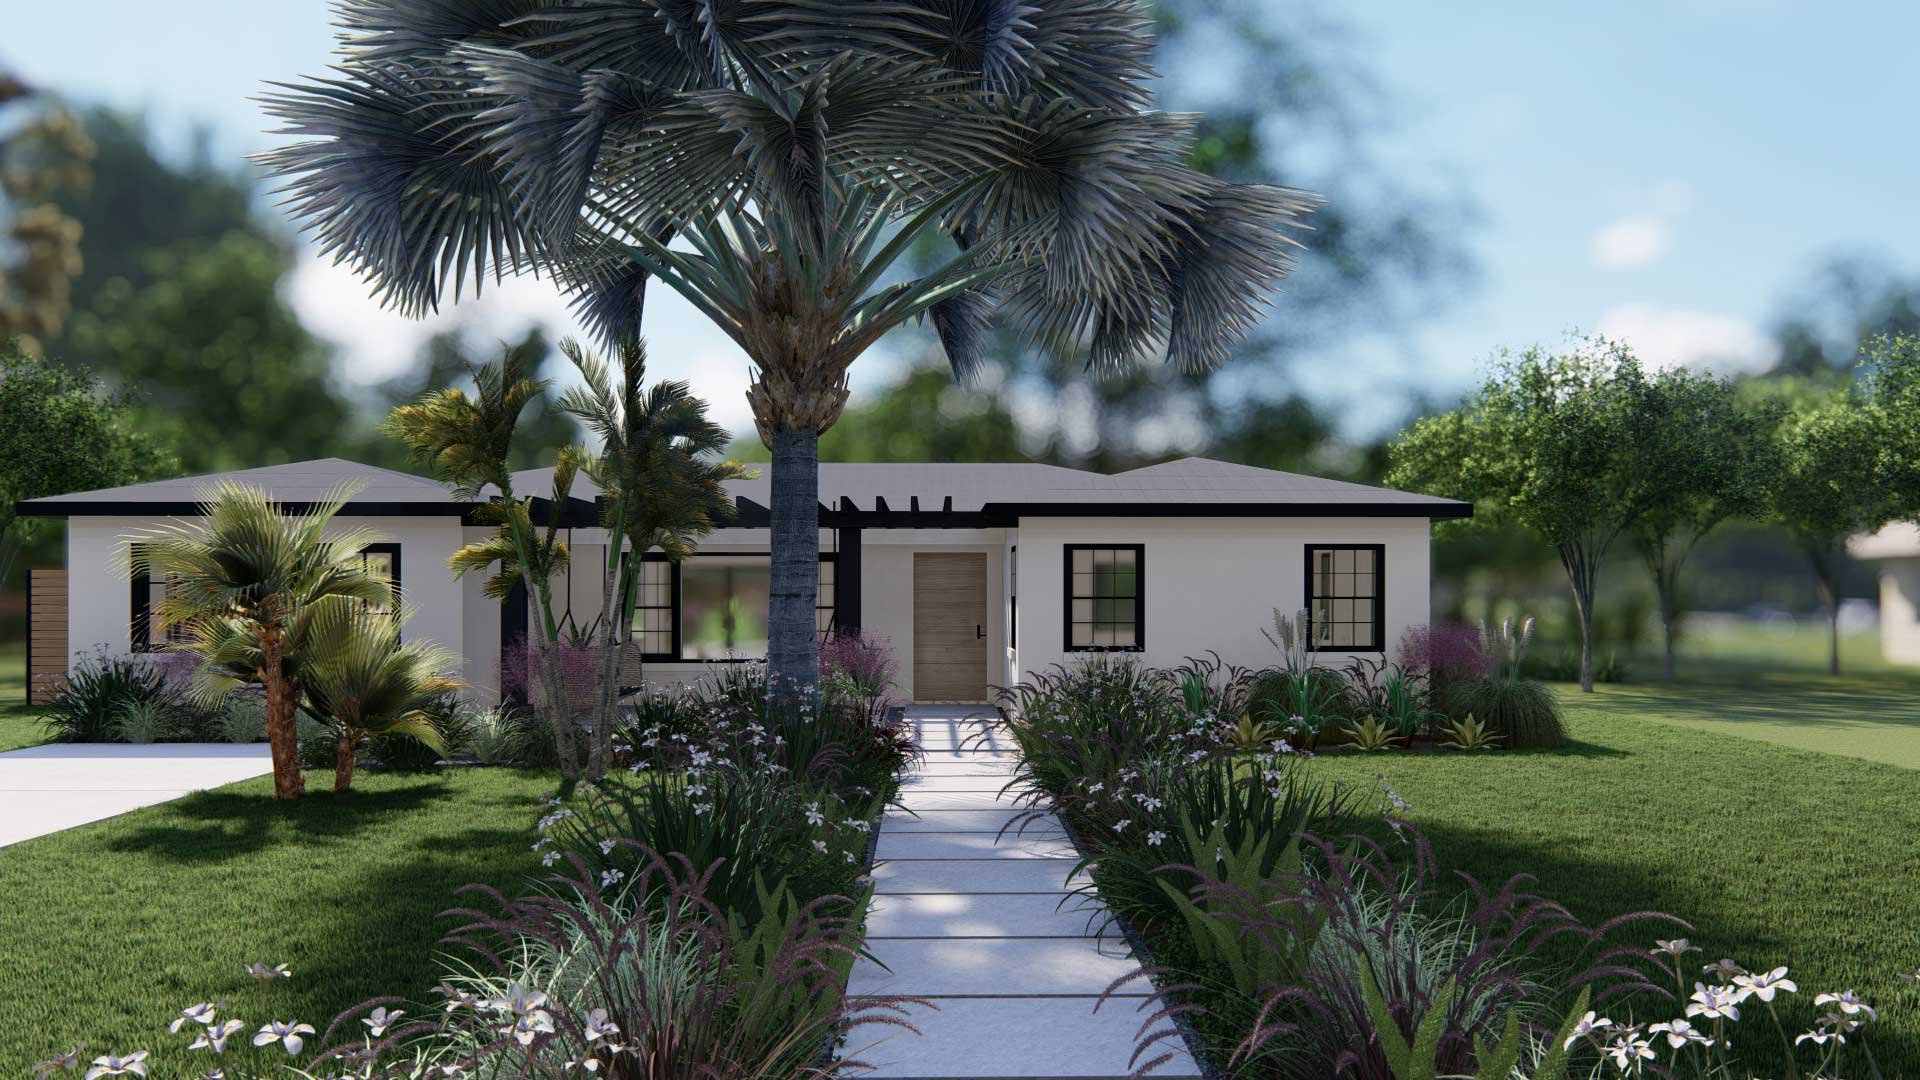 棕榈树、蕨类植物和多年生植物创造了一个轻松的热带环境，与新的黑色凉棚互补，并在牧场住宅庭院中恢复了室外生活空间的活力。